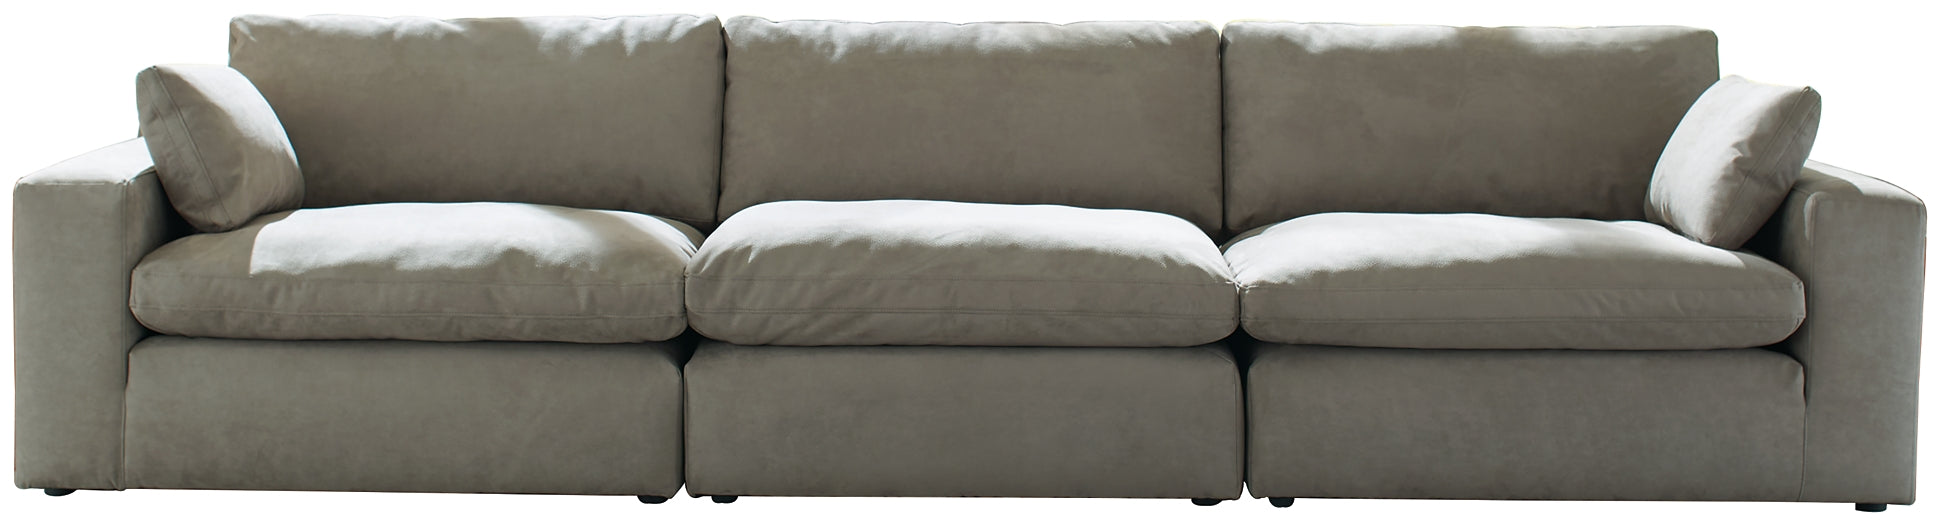 Next-Gen Gaucho 3-Piece Sectional Sofa JR Furniture Storefurniture, home furniture, home decor